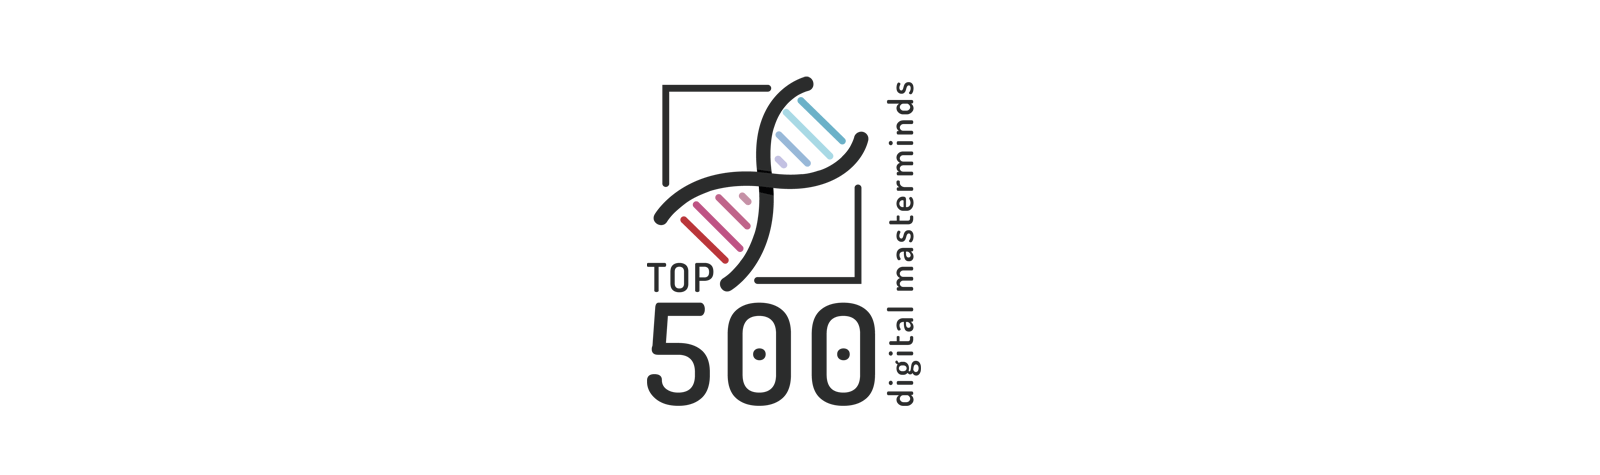 Top 500 Digital Masterminds diventa Associazione